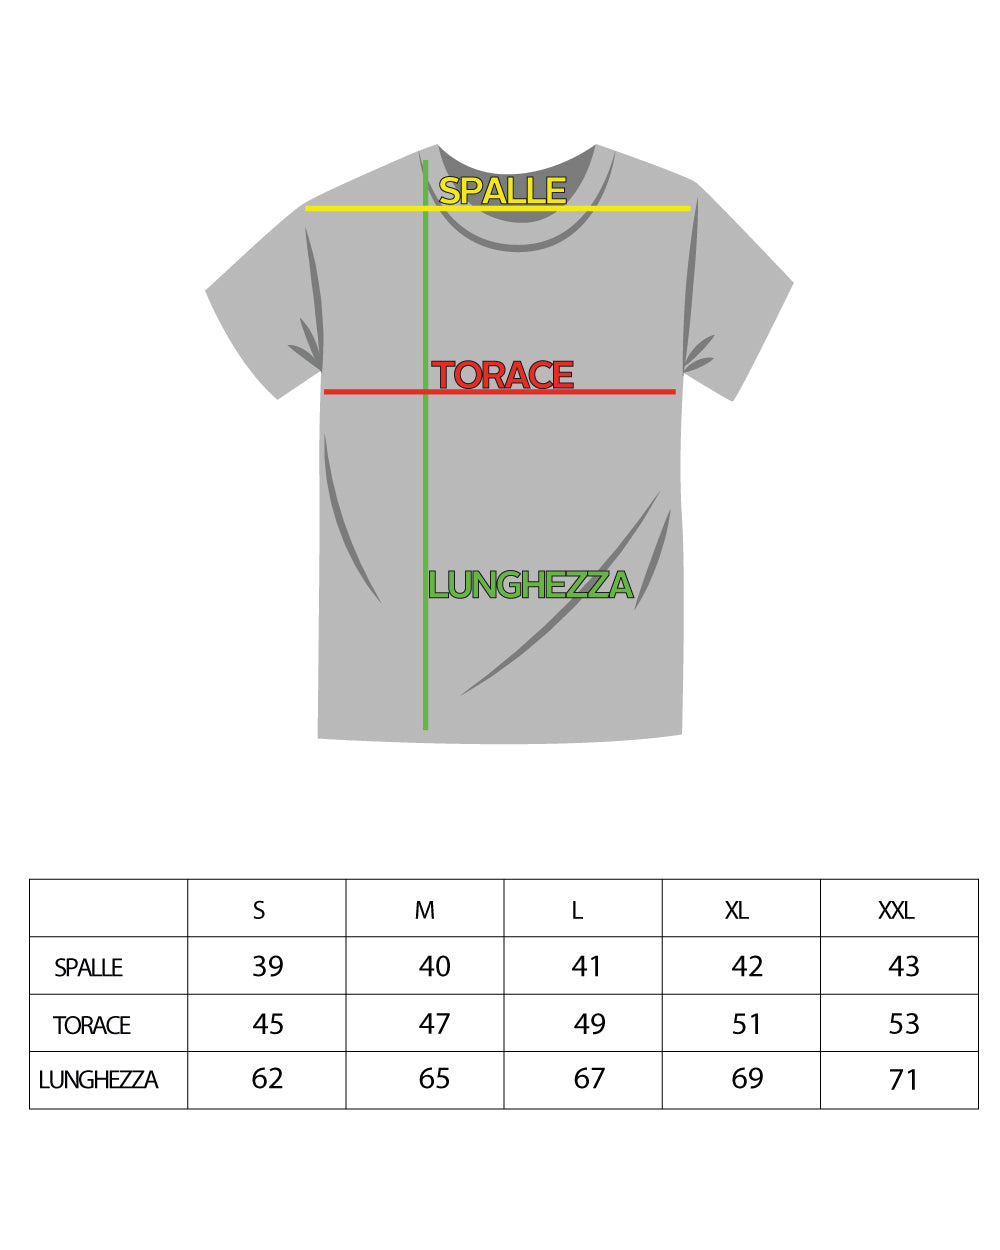 Men's Thread Short Sleeve Solid Color Aqua Green V-Neck Casual T-shirt GIOSAL-TS2866A